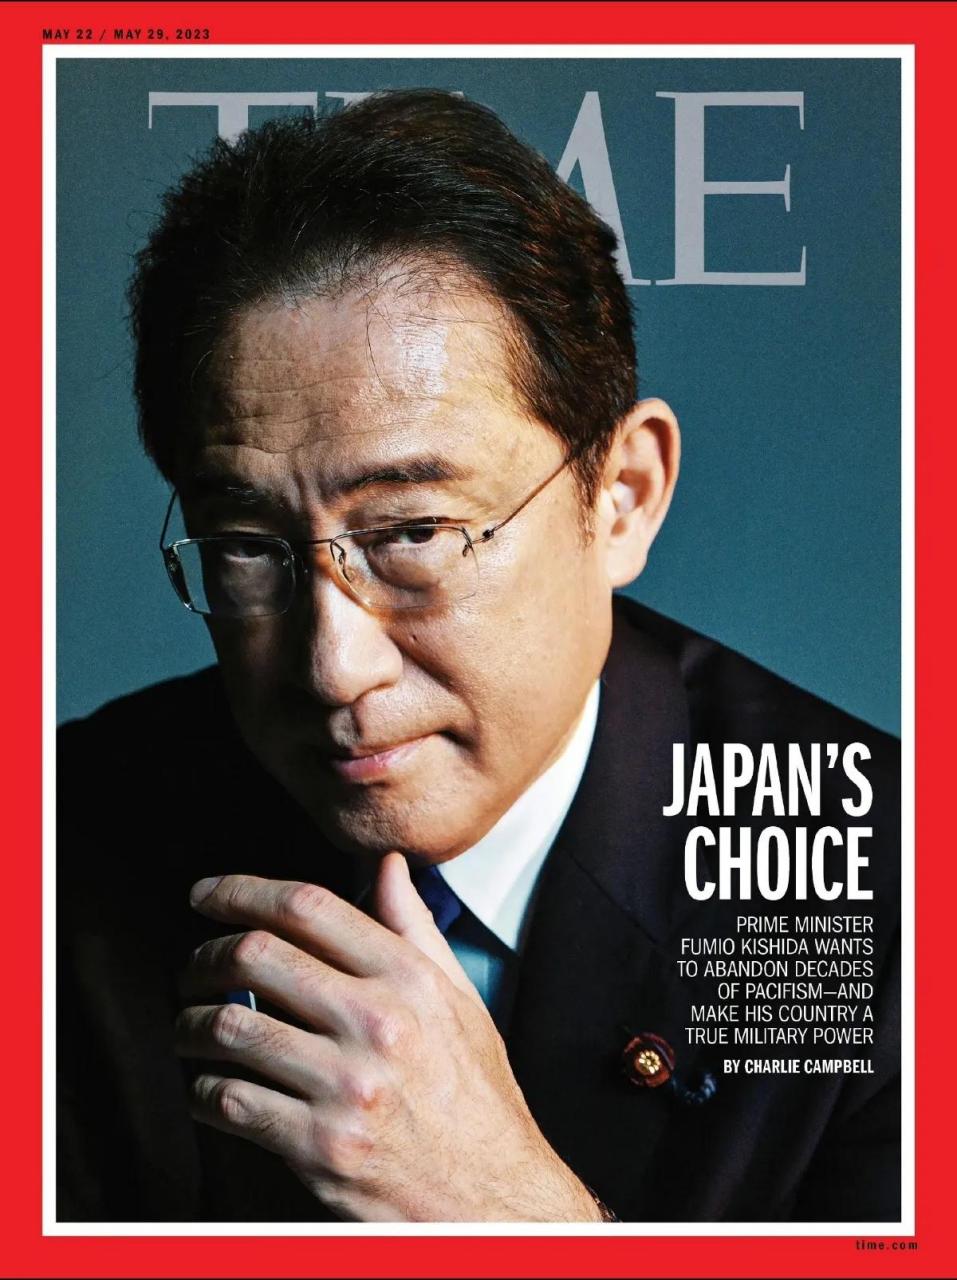 最新一期的《time》杂志封面:日本的选择:岸田文雄想要放弃维持几